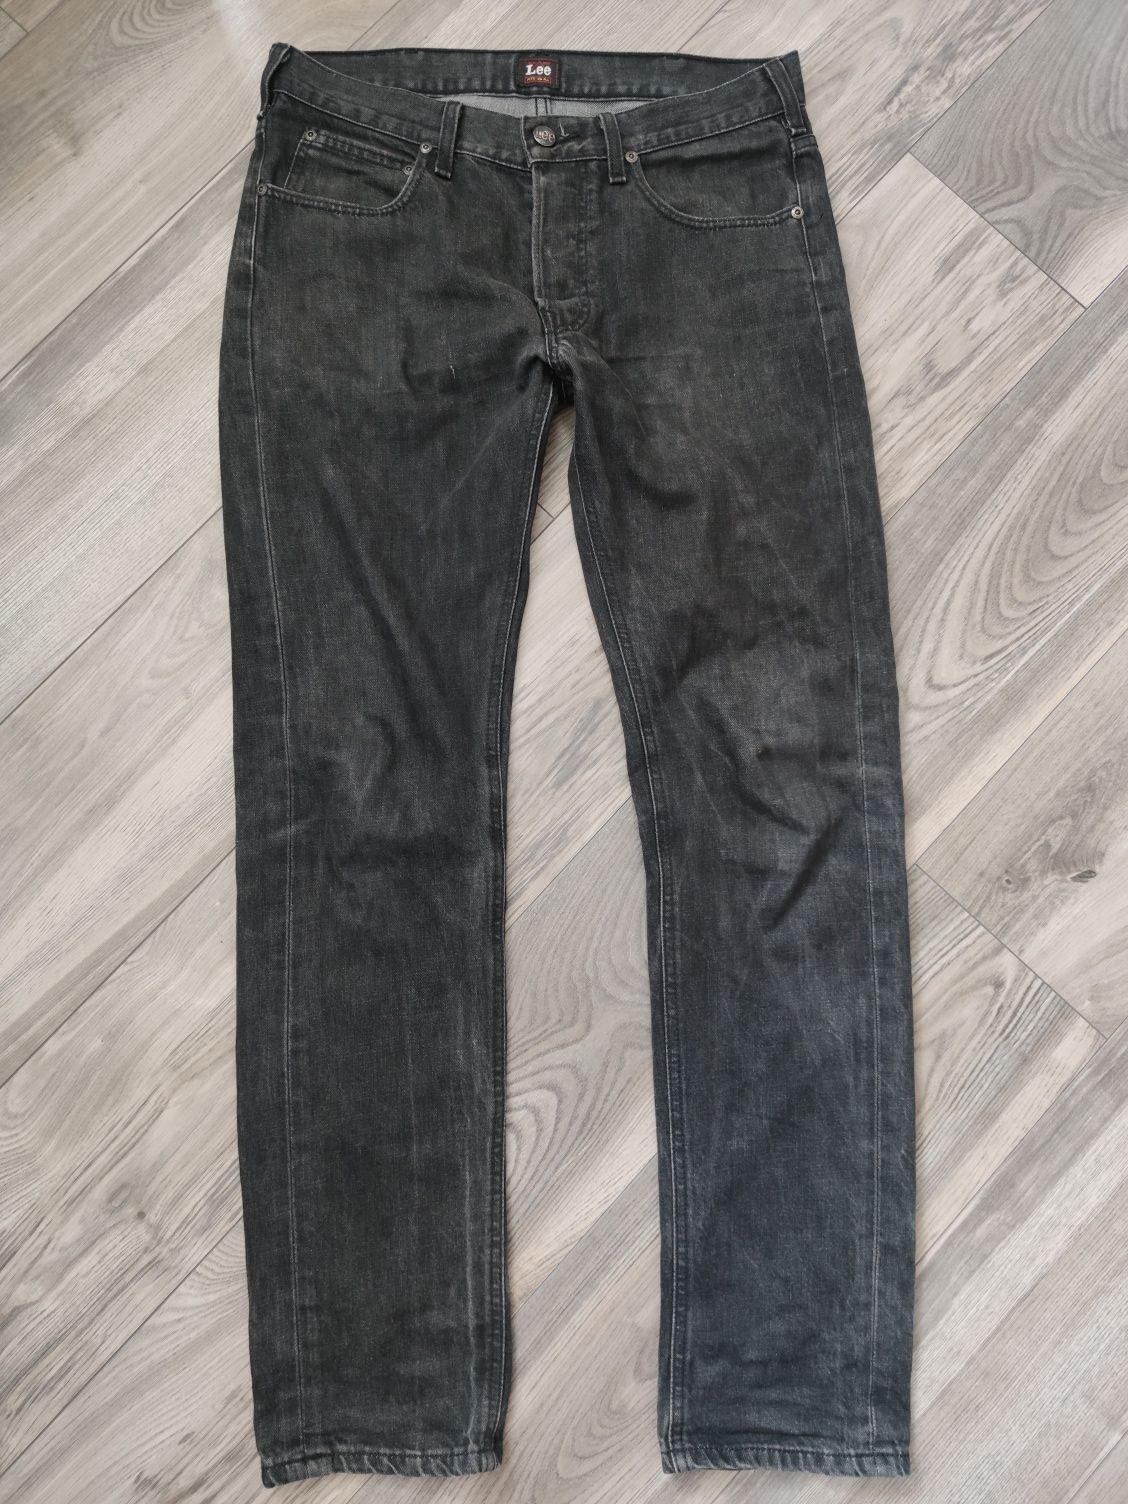 Lee Daren spodnie jeansy slim w31 l32 jeans